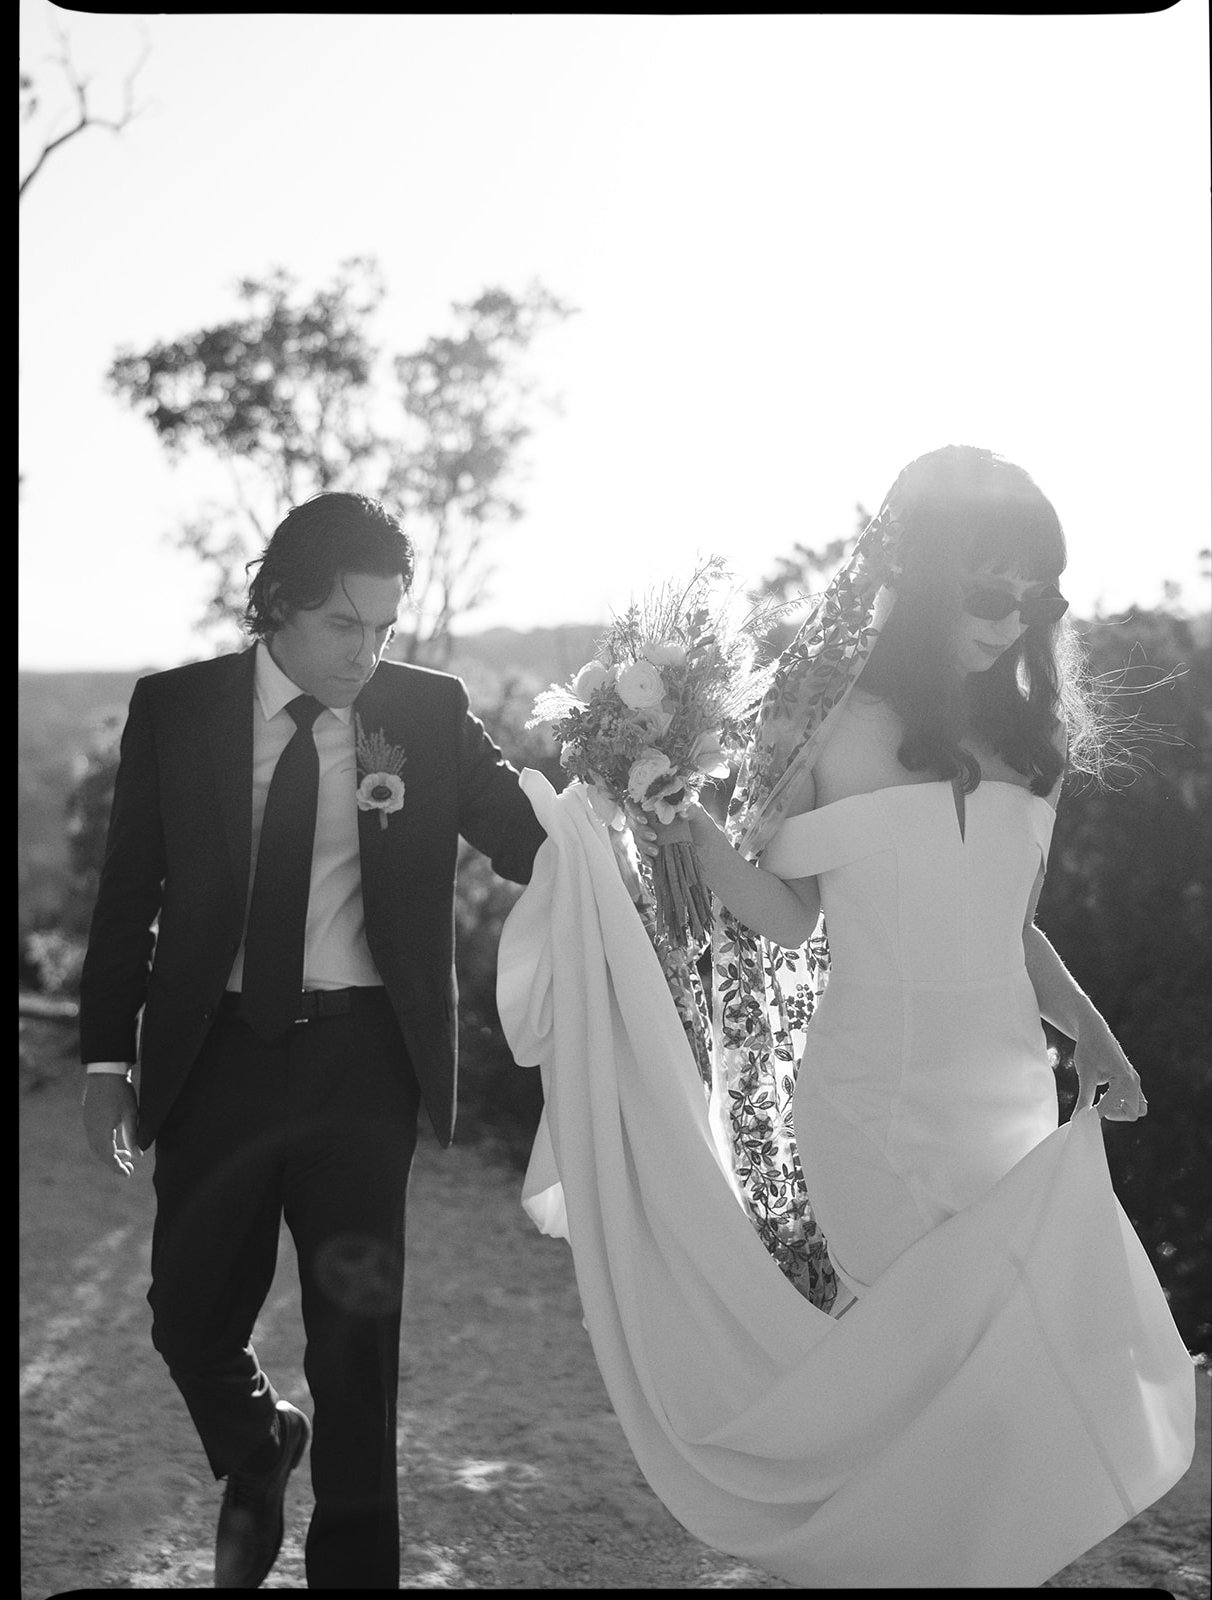 Best-Austin-Wedding-Photographers-Elopement-Film-35mm-Asheville-Santa-Barbara-Laguna-Gloria-36.jpg